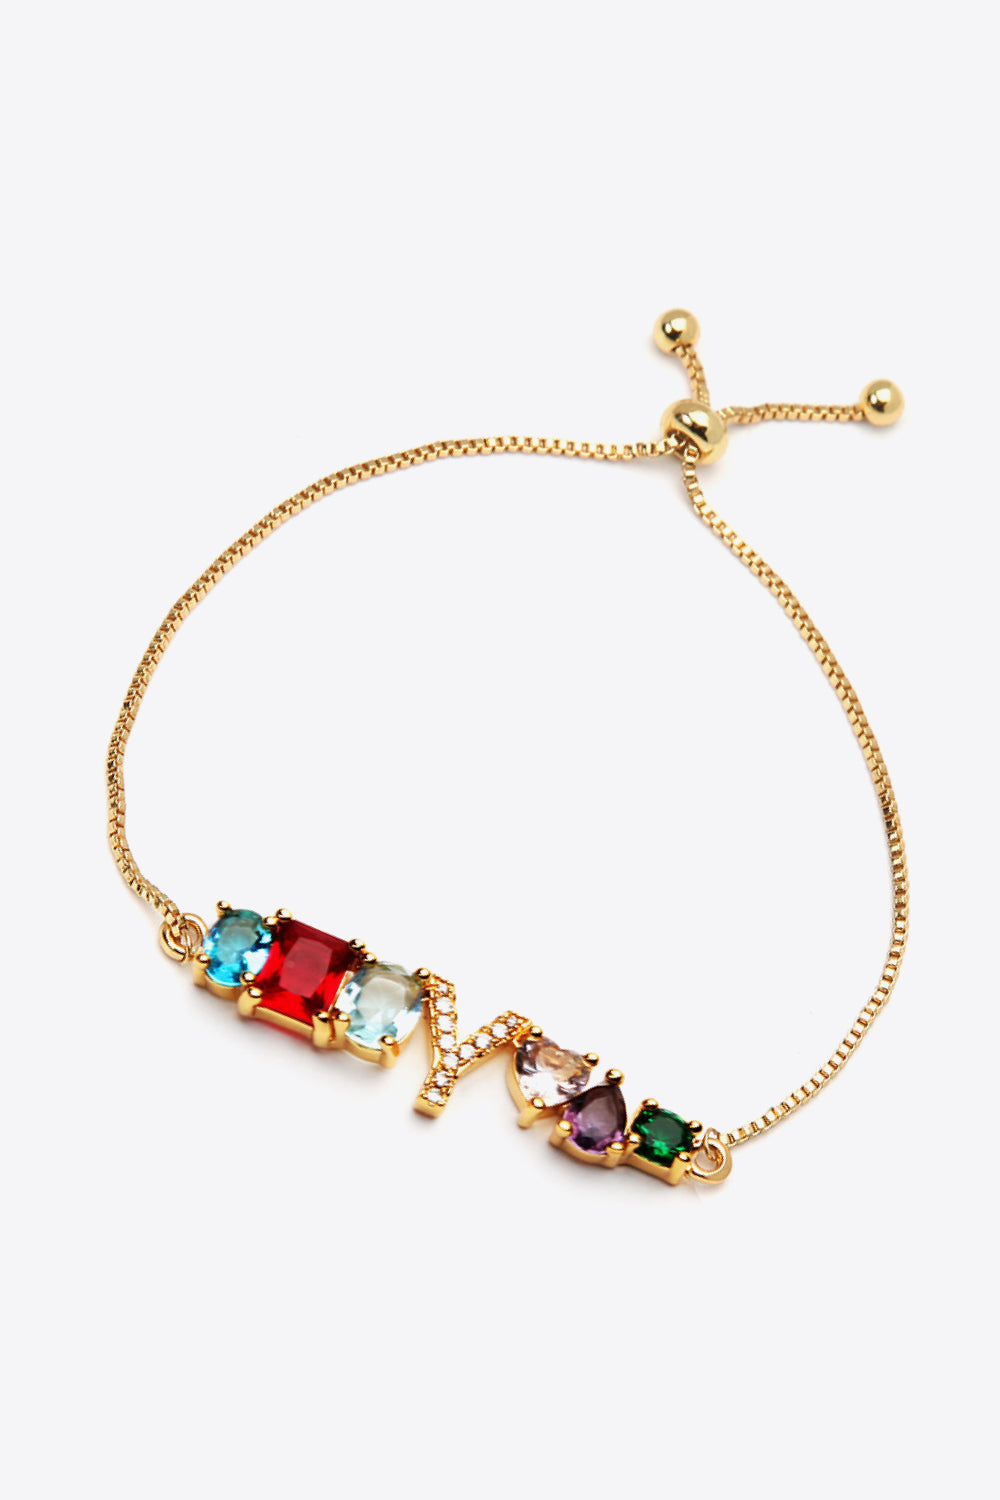 U to Z Zircon Bracelet - Women’s Jewelry - Bracelets - 14 - 2024